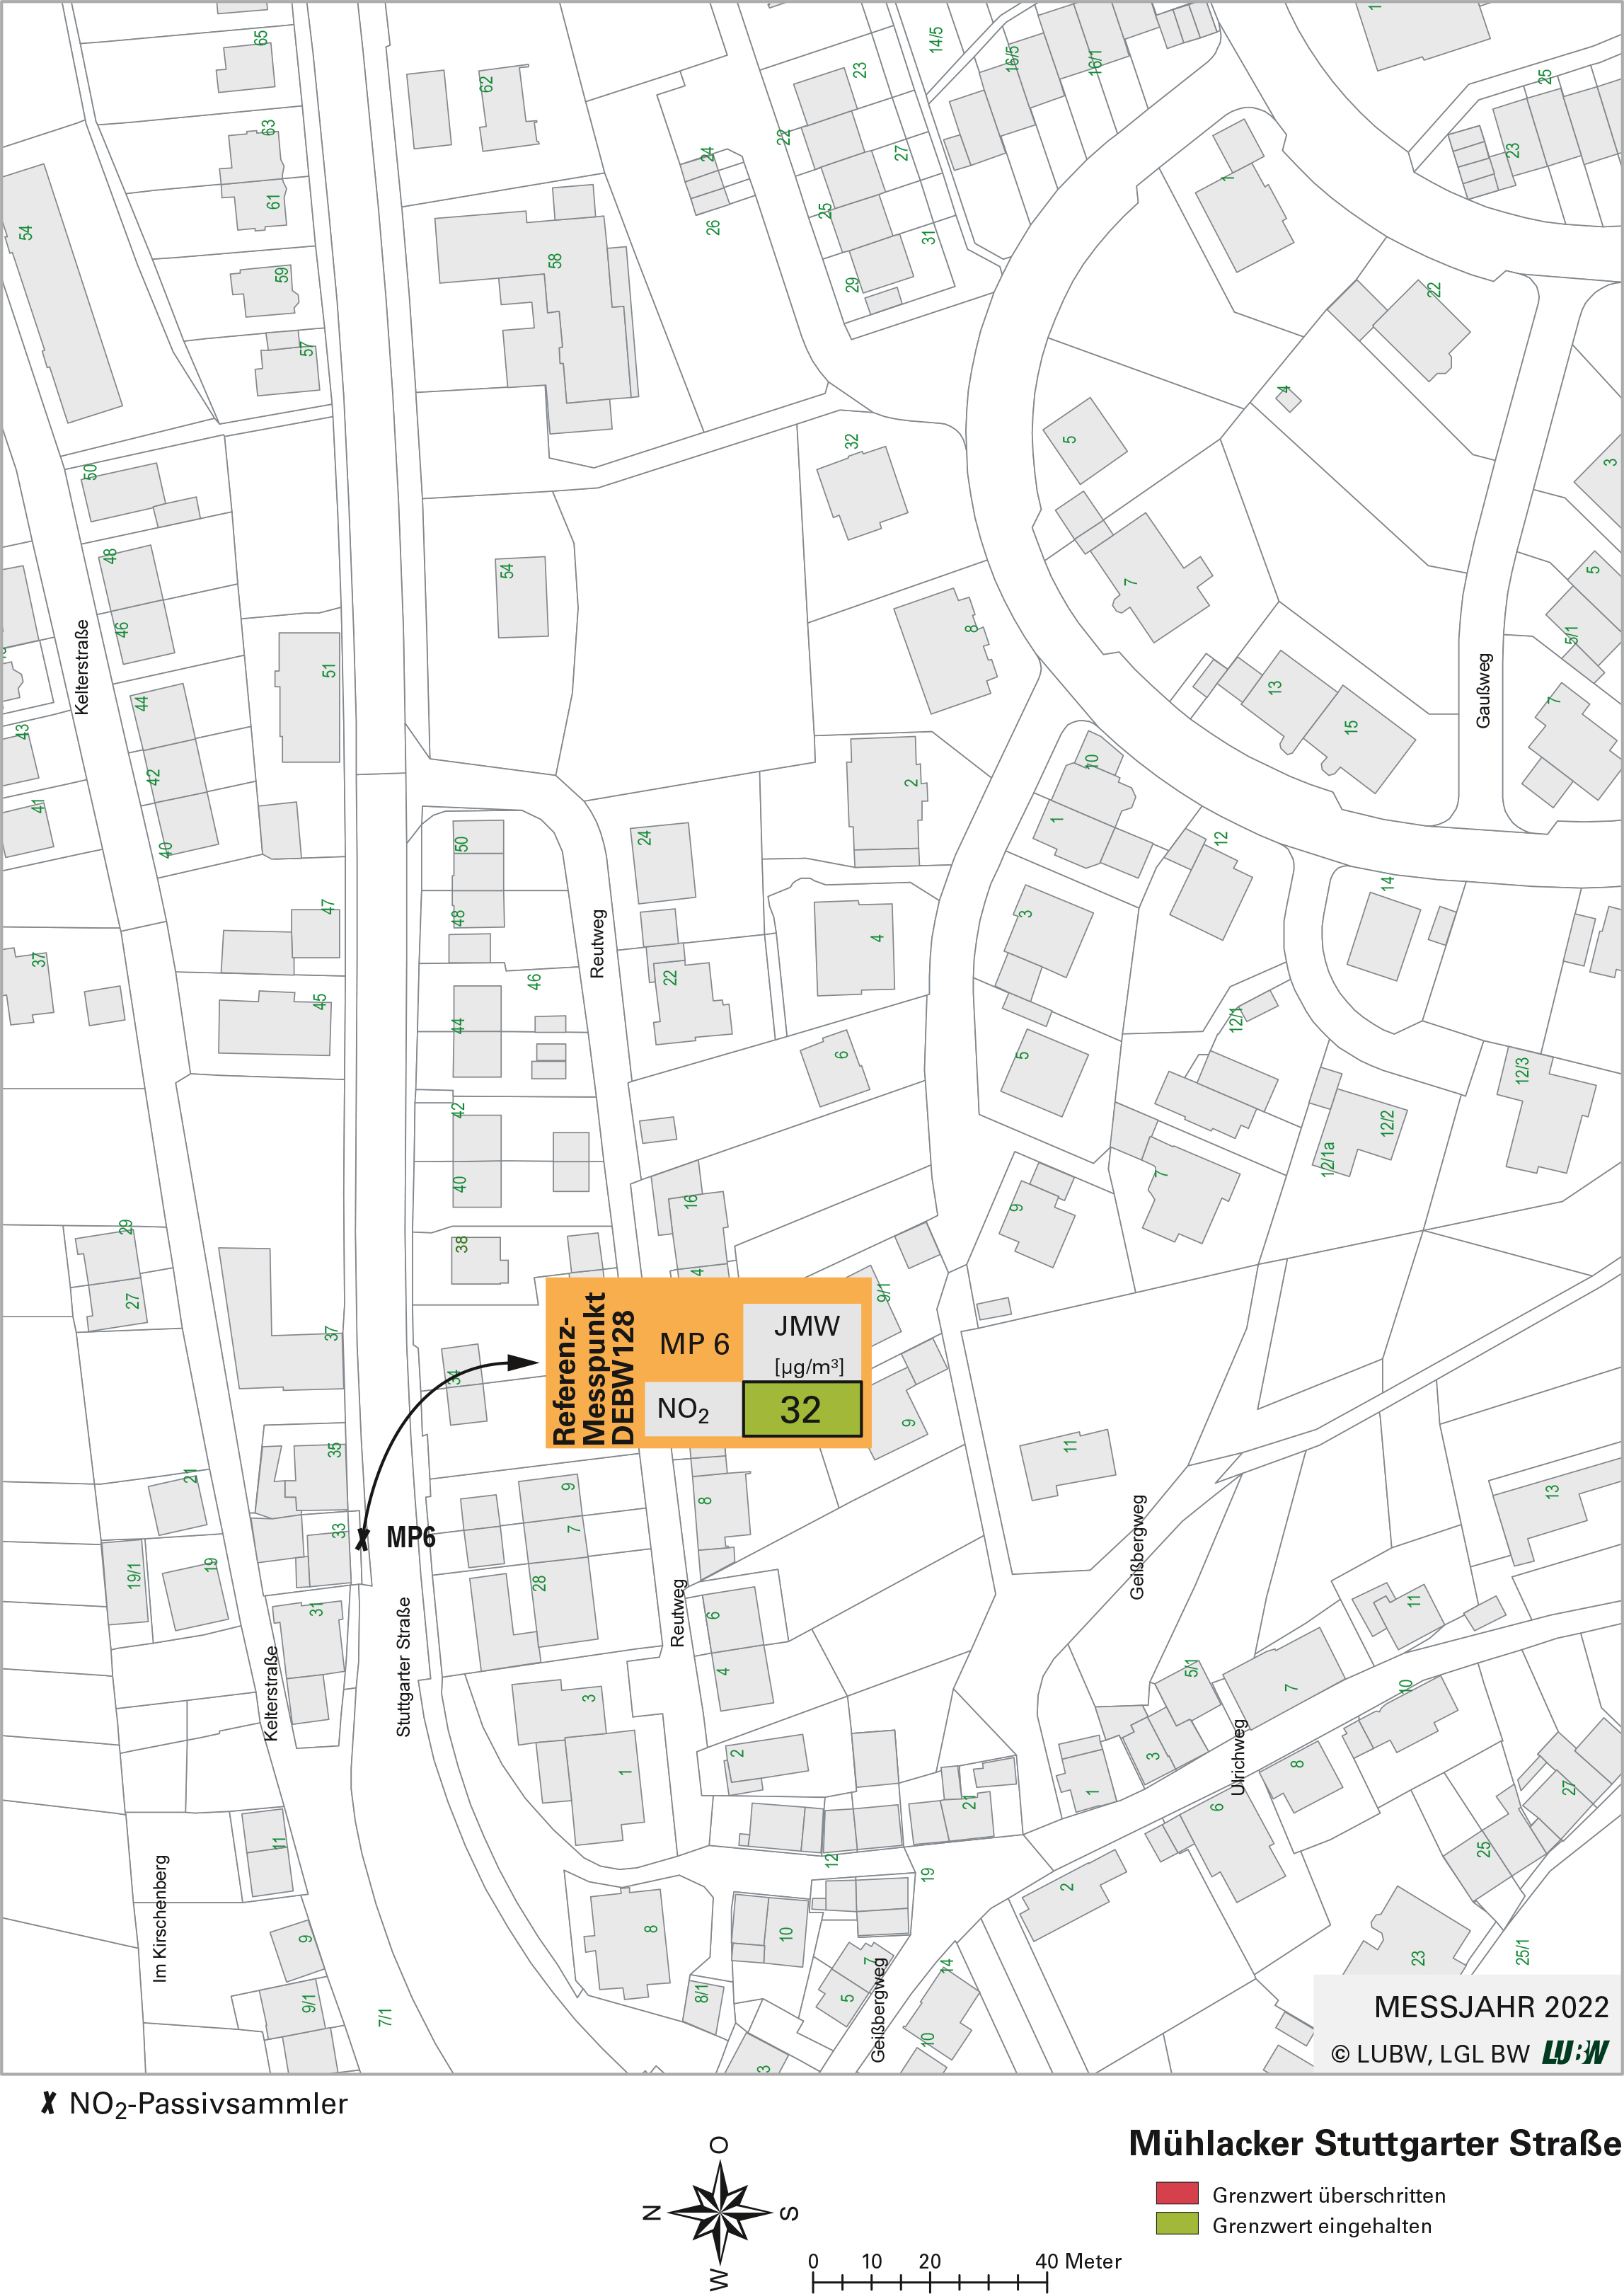 Kartenausschnitt, der die Lage der Messstelle Mühlacker Stuttgarter Straße (Referenzmesspunkt) zeigt. Dargestellt ist zudem das Ergebnis (Jahresmittelwert 2022) der gemessenen Stickstoffdioxidbelastung.